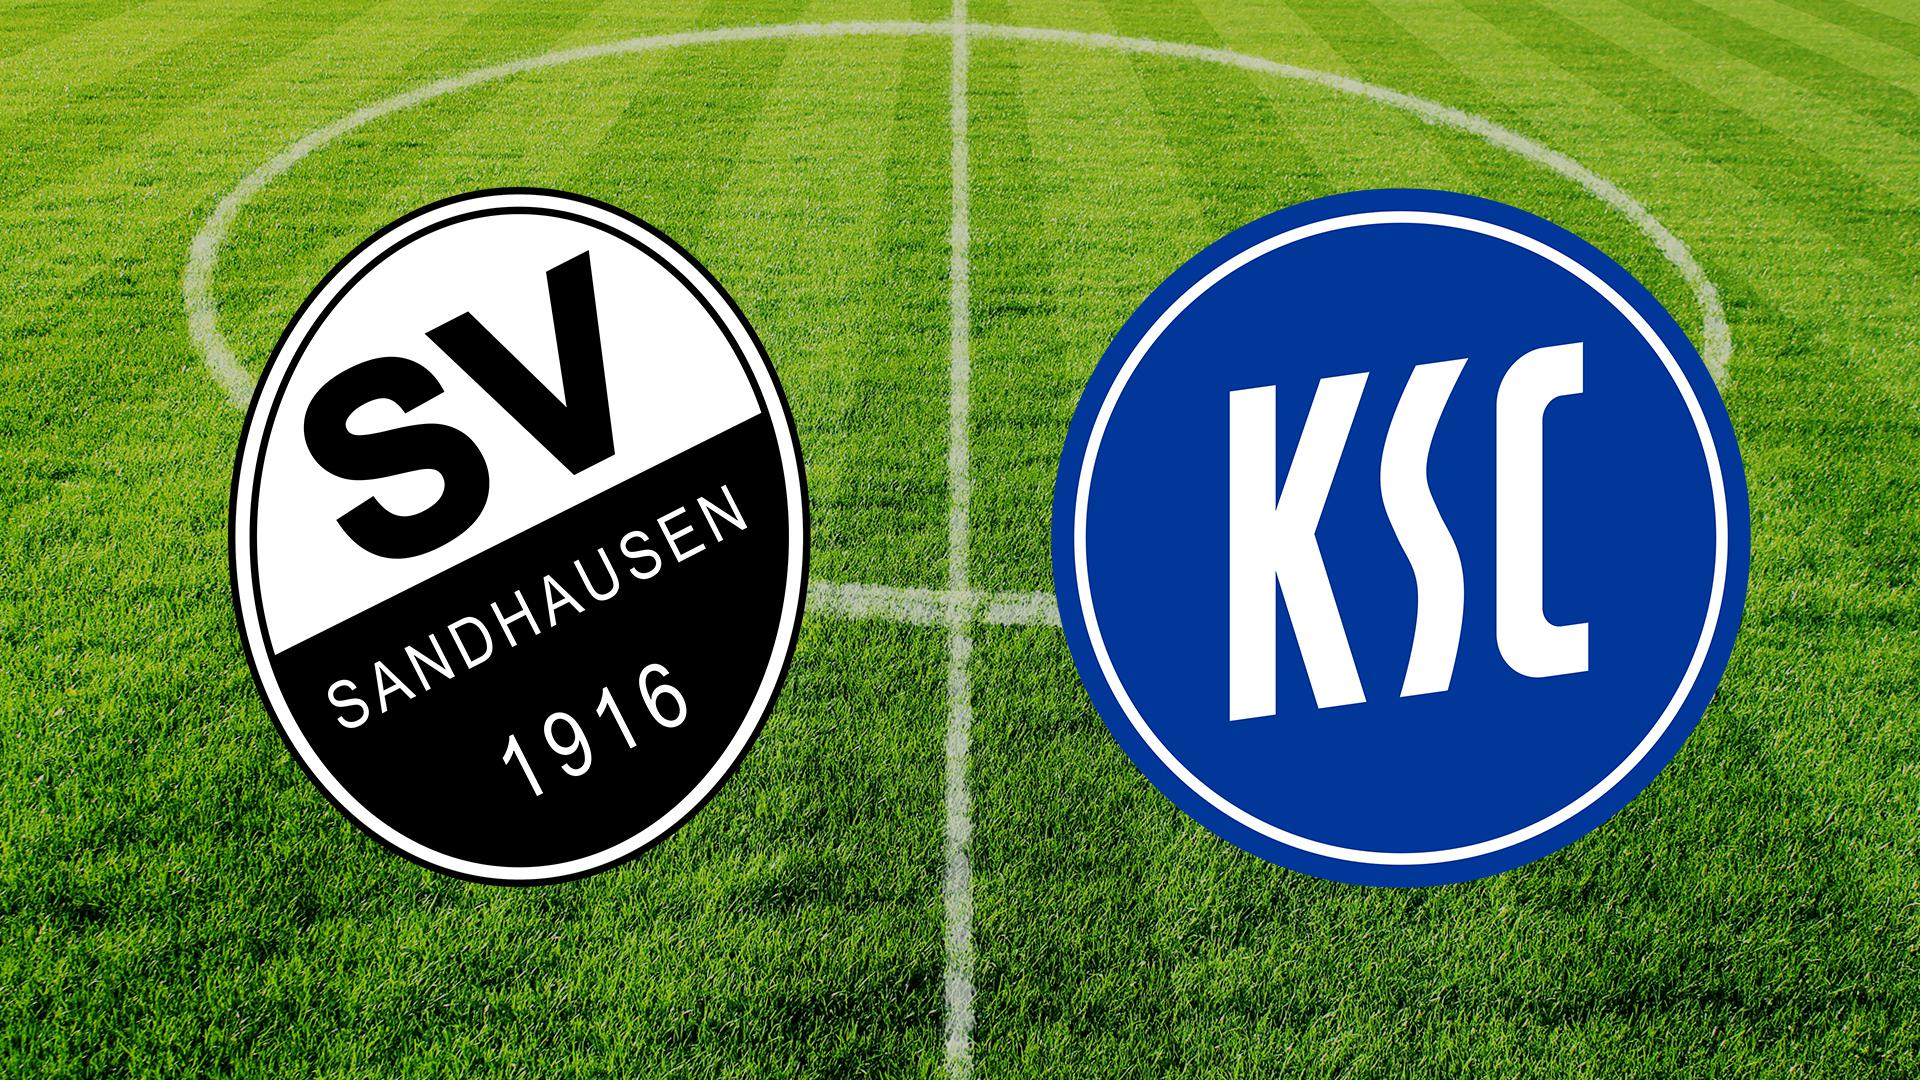 Am 14. August ist der KSC zu Gast beim SV Sandhausen.